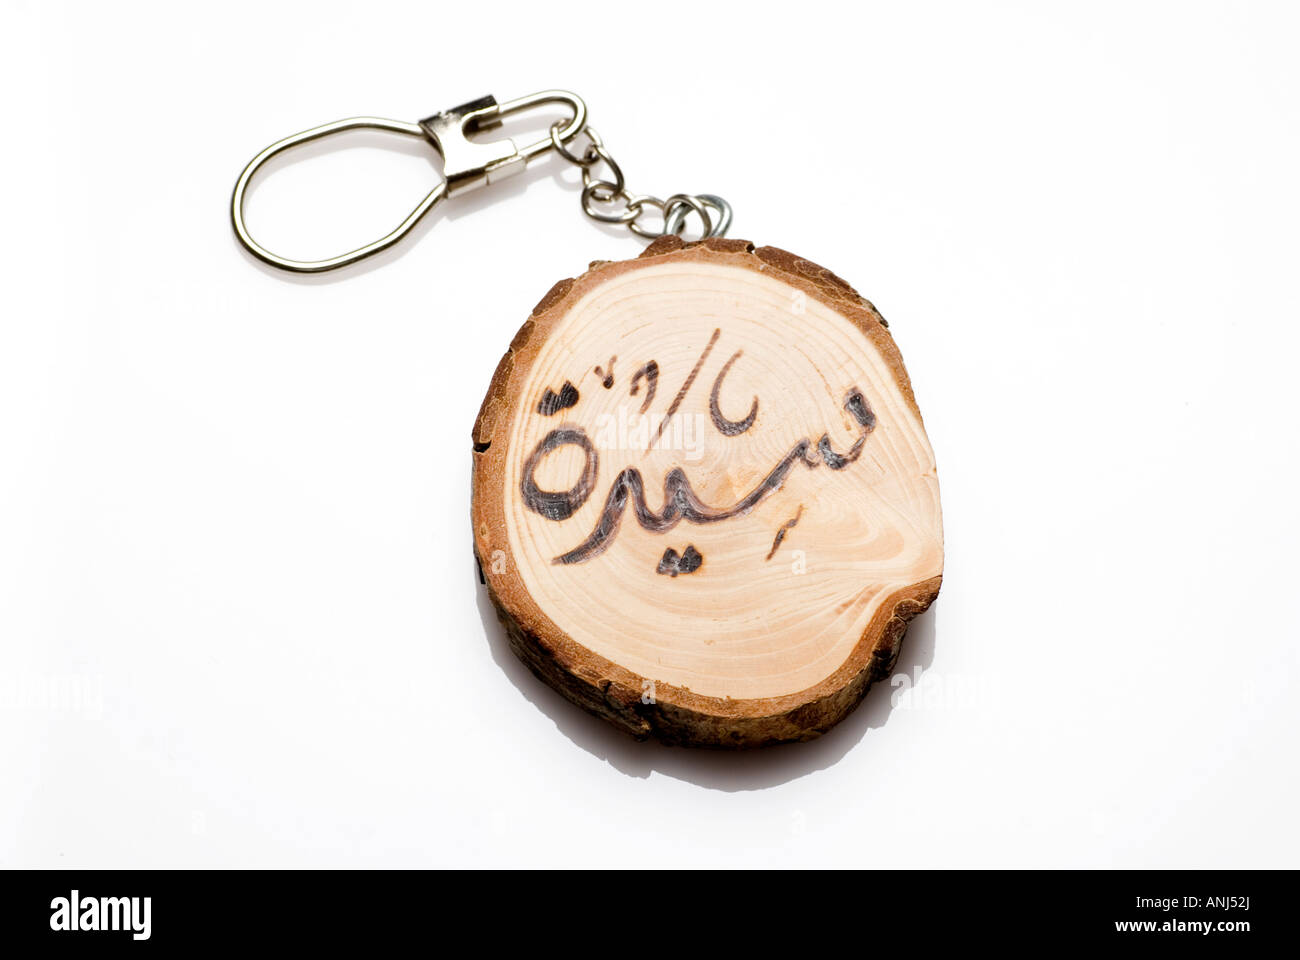 L'arabe key chaîne avec nom gravé sur bois Banque D'Images